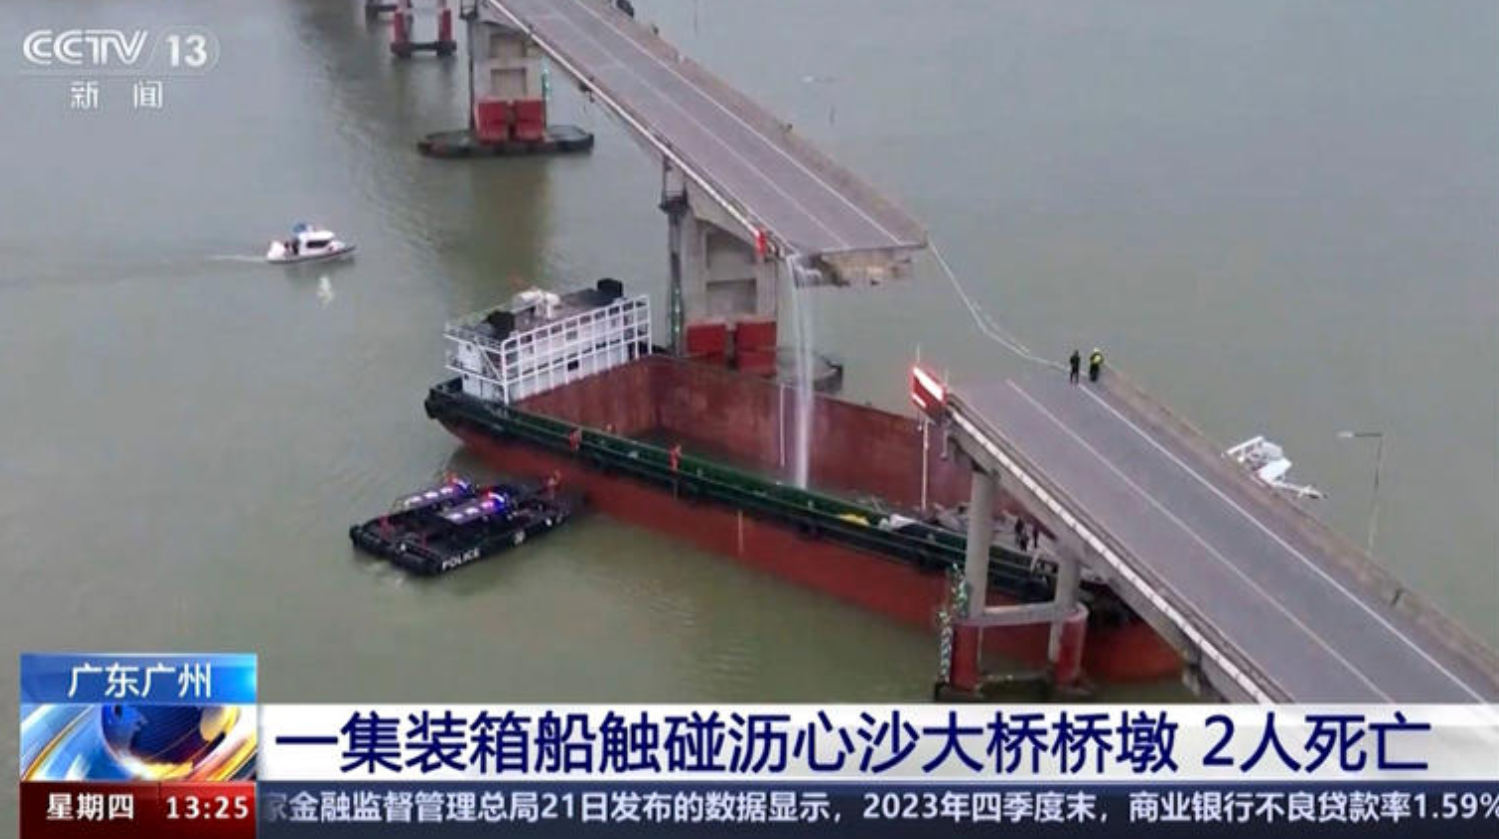 Yük gemisi köprü iskelesine çarptı - yolcu otobüsü köprüden geminin üzerine düştü - çok sayıda ölü ve kayıp var